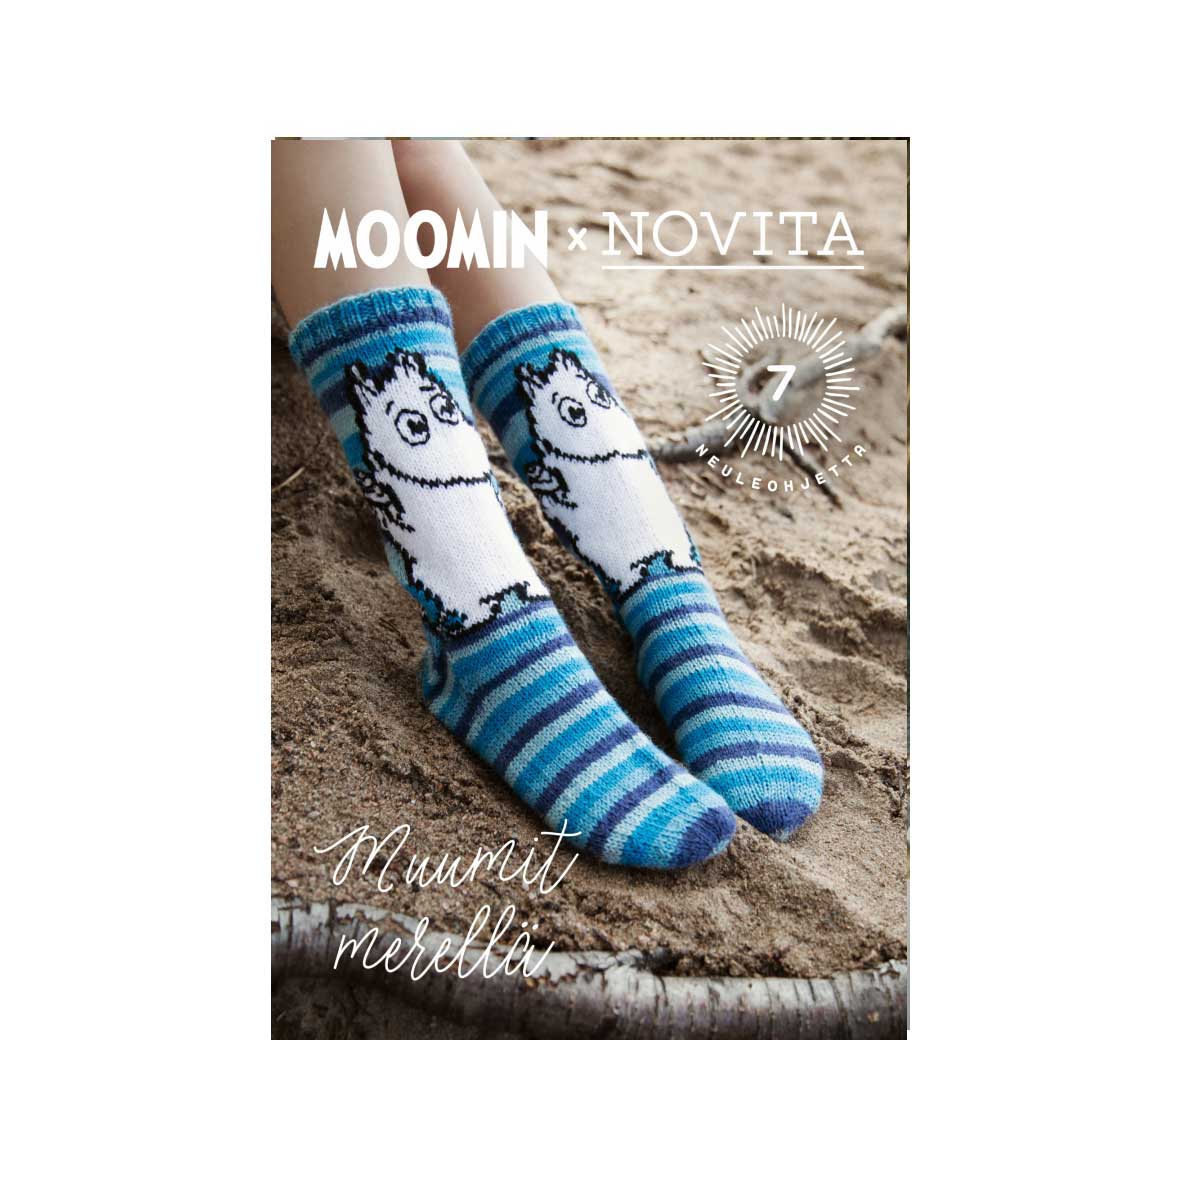  Magazine Moomin x Novita - Muumit Merellä, 2020 (in Finnish)